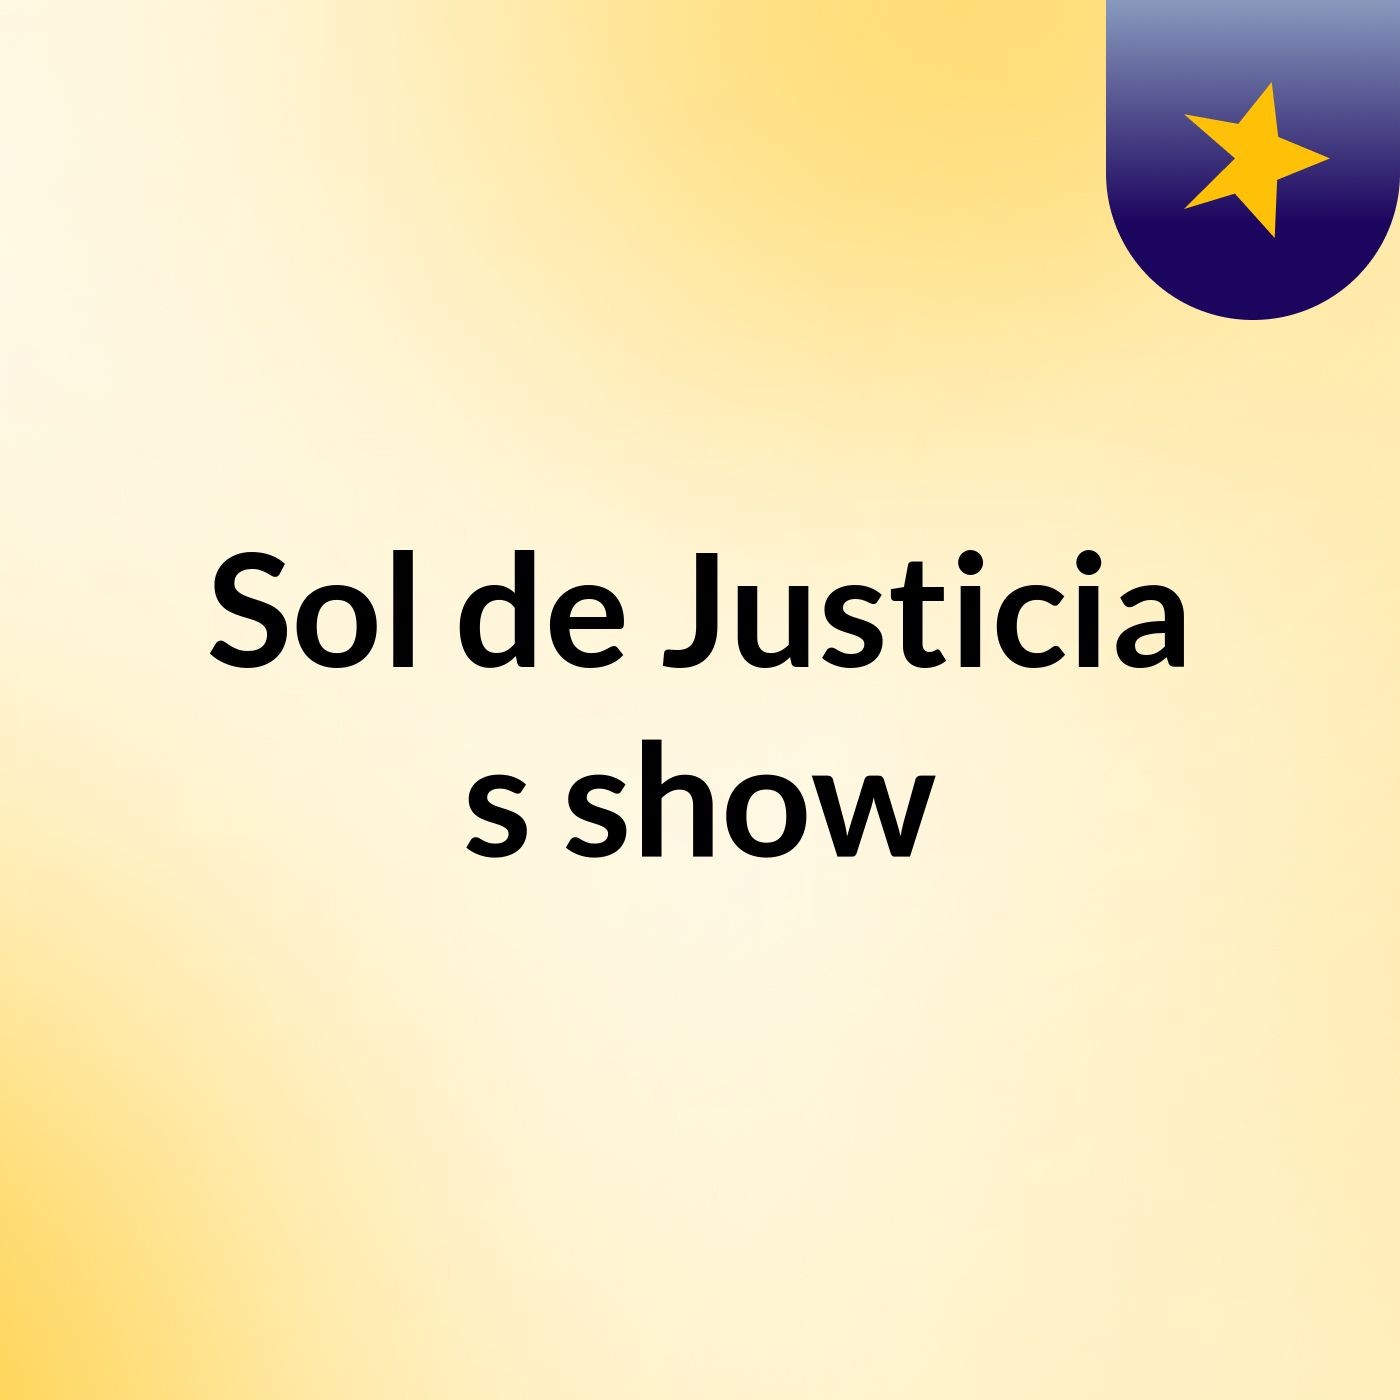 Sol de Justicia's show